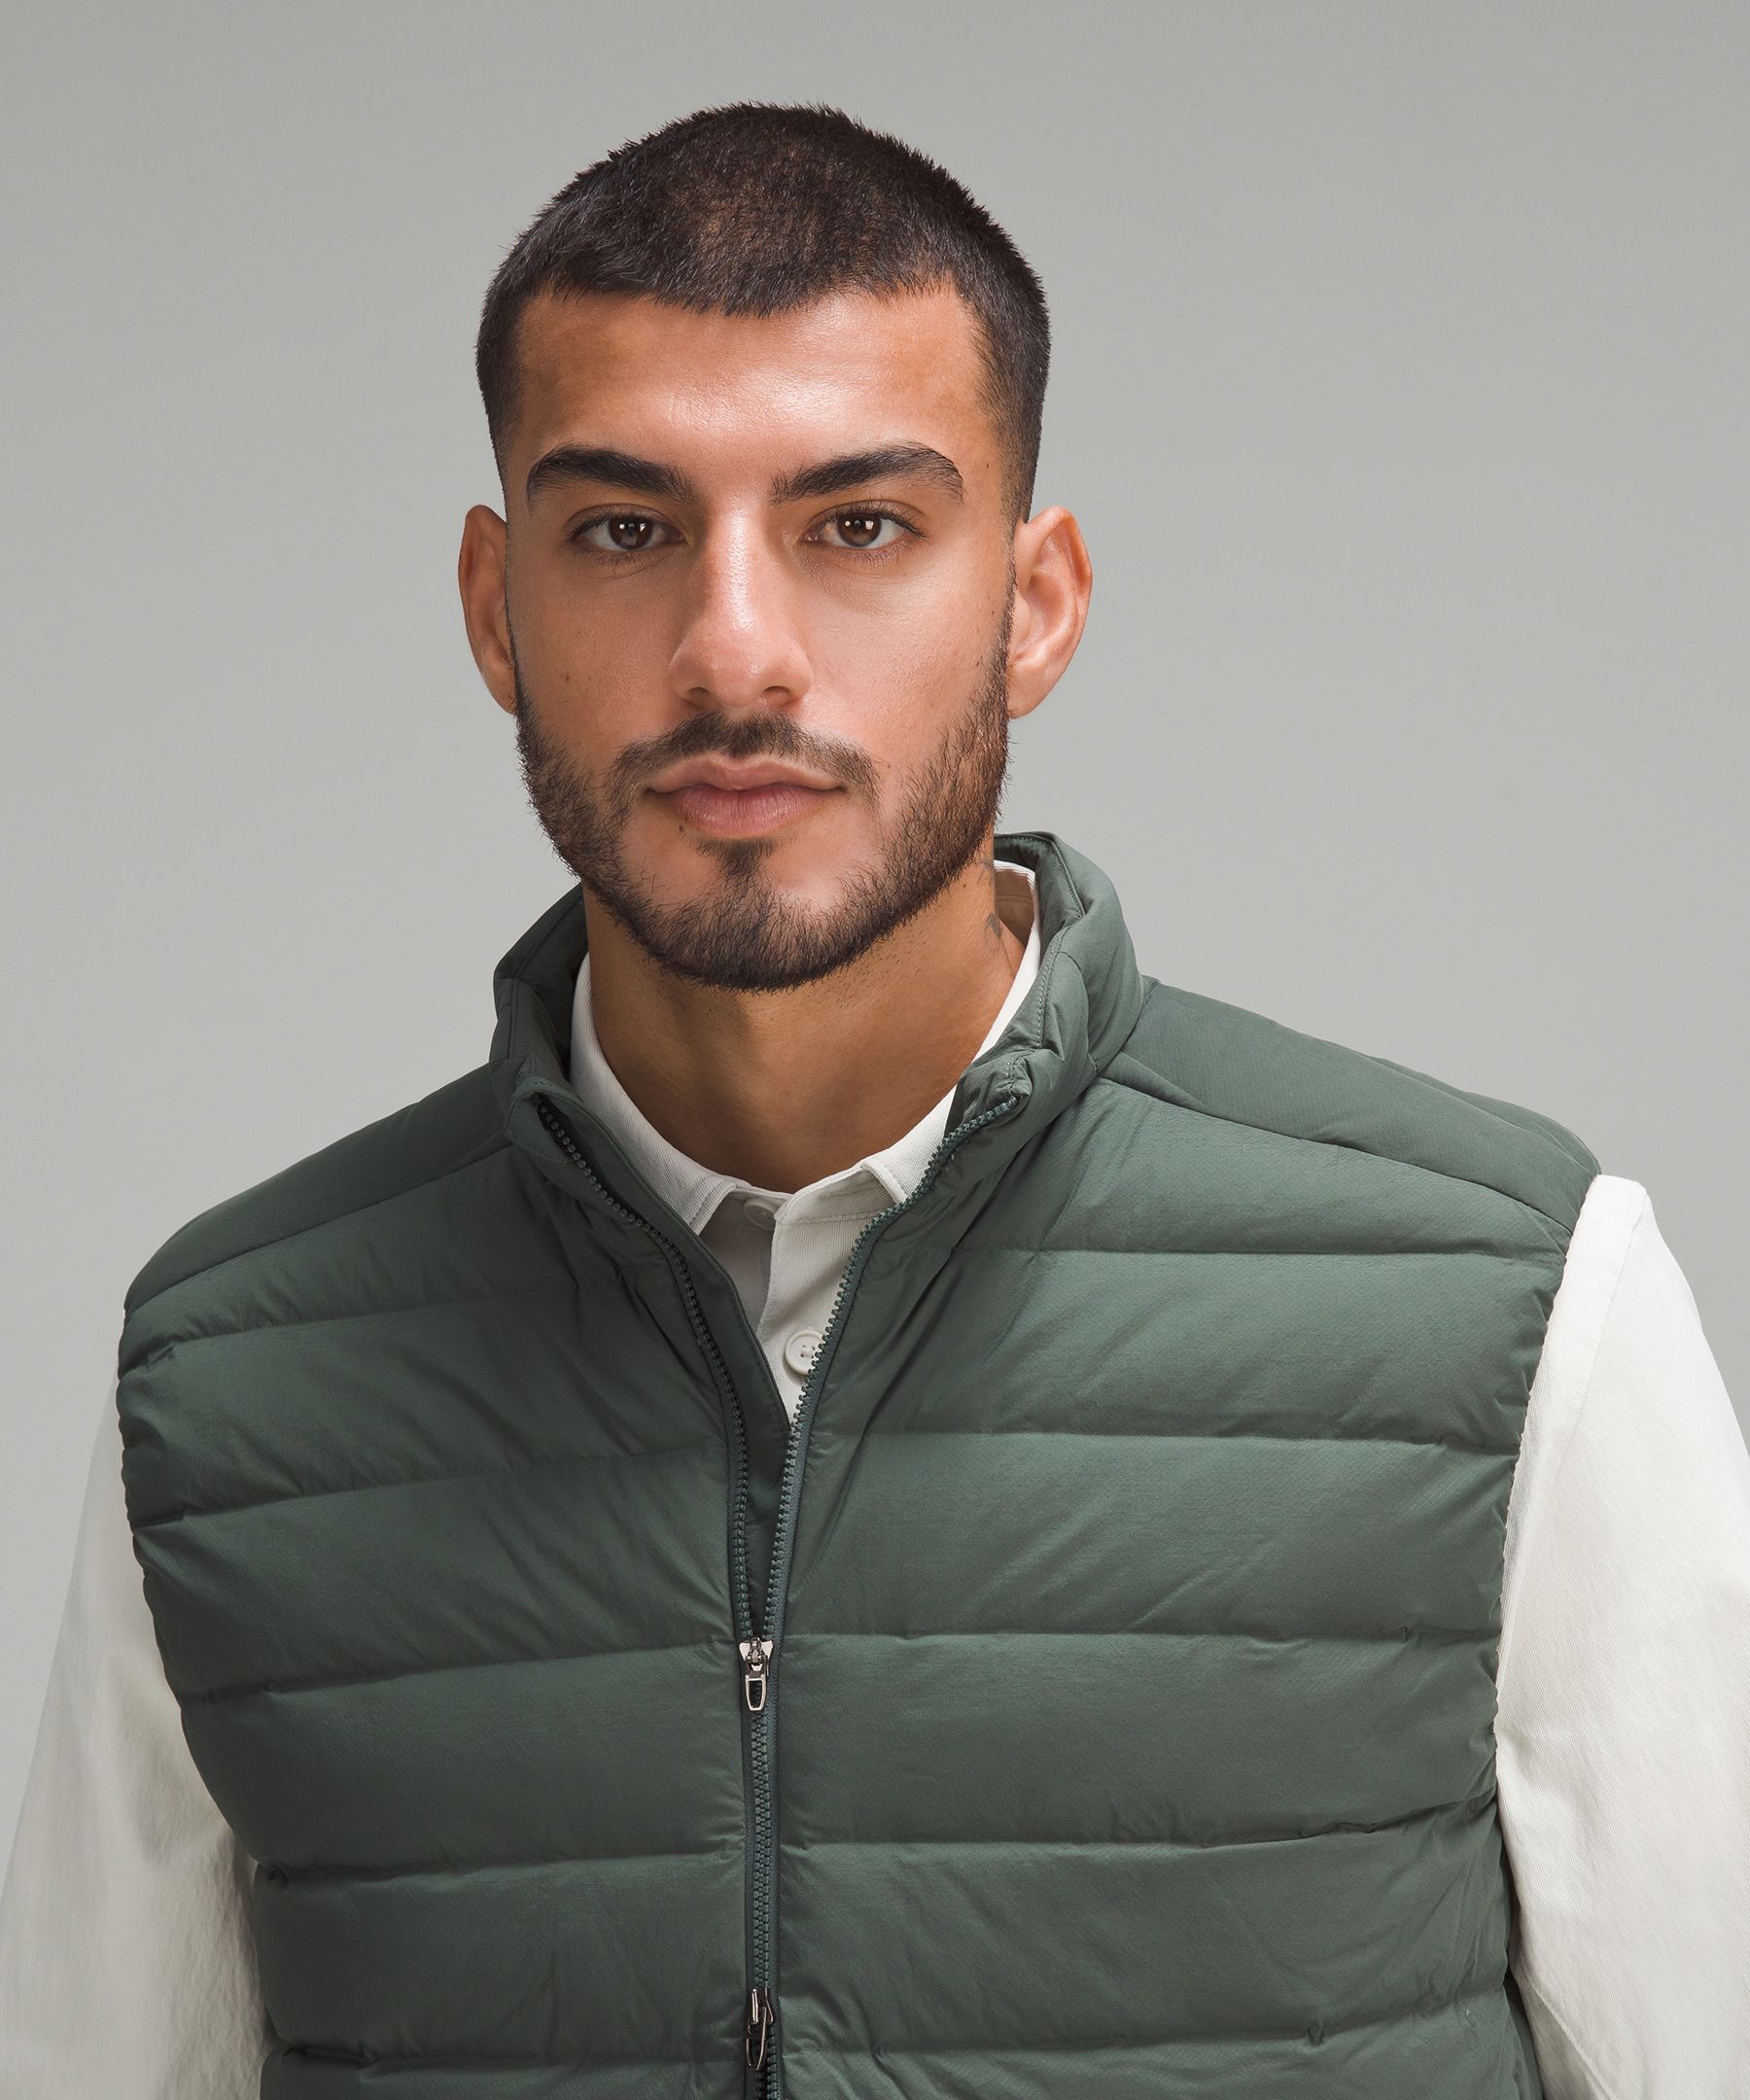 lululemon athletica Green Outerwear Vests for Men